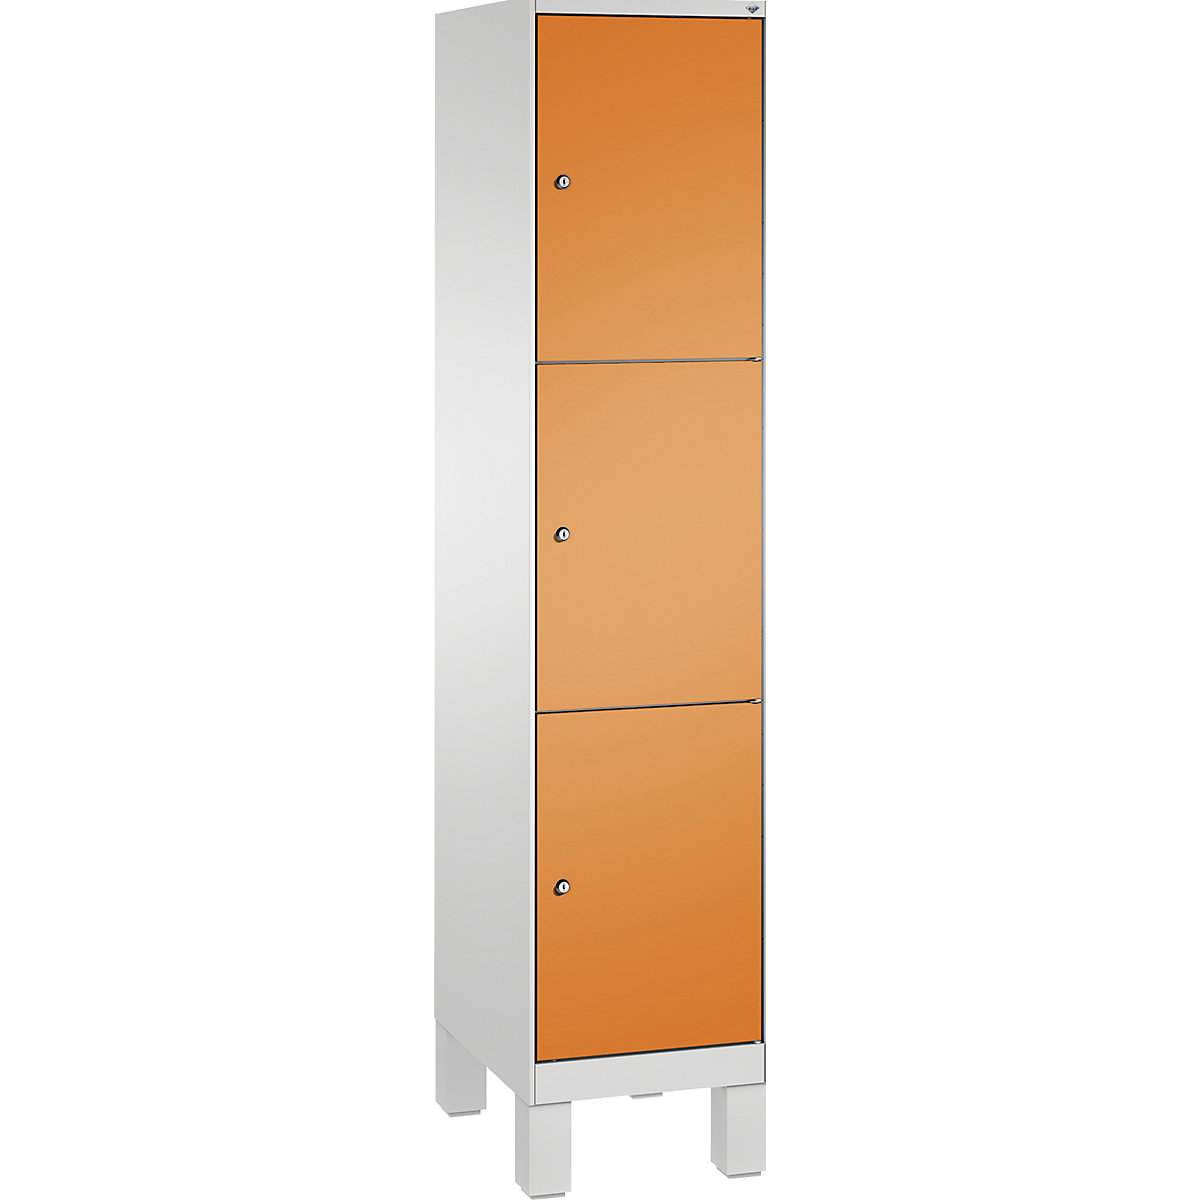 EVOLO locker unit, with feet – C+P, 1 compartment, 3 shelf compartments, compartment width 400 mm, light grey / yellow orange